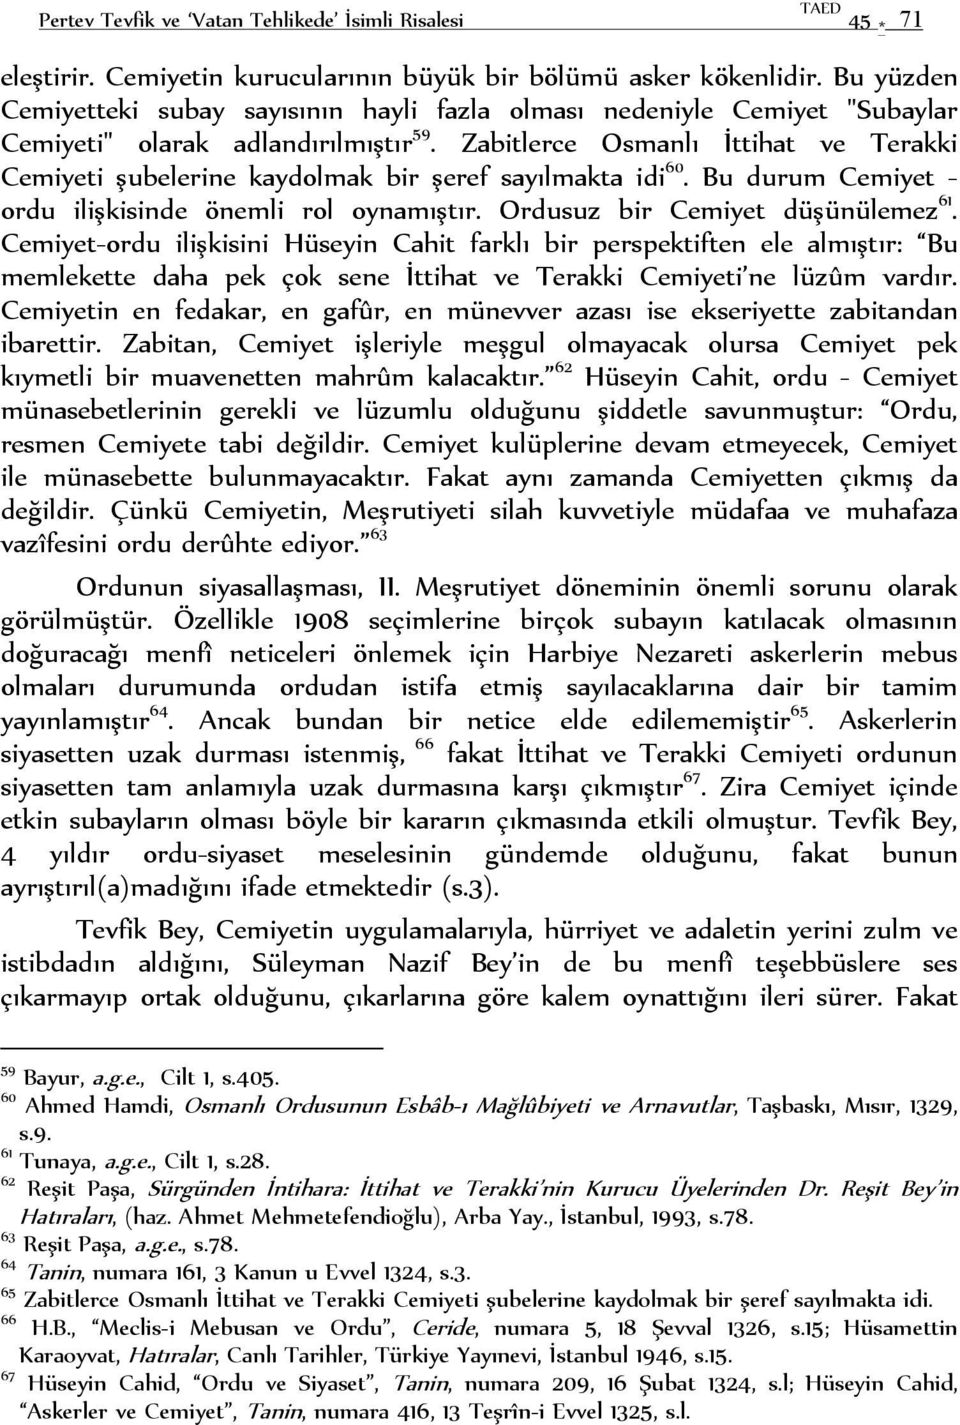 Zabitlerce Osmanlı İttihat ve Terakki Cemiyeti şubelerine kaydolmak bir şeref sayılmakta idi 60. Bu durum Cemiyet - ordu ilişkisinde önemli rol oynamıştır. Ordusuz bir Cemiyet düşünülemez 61.